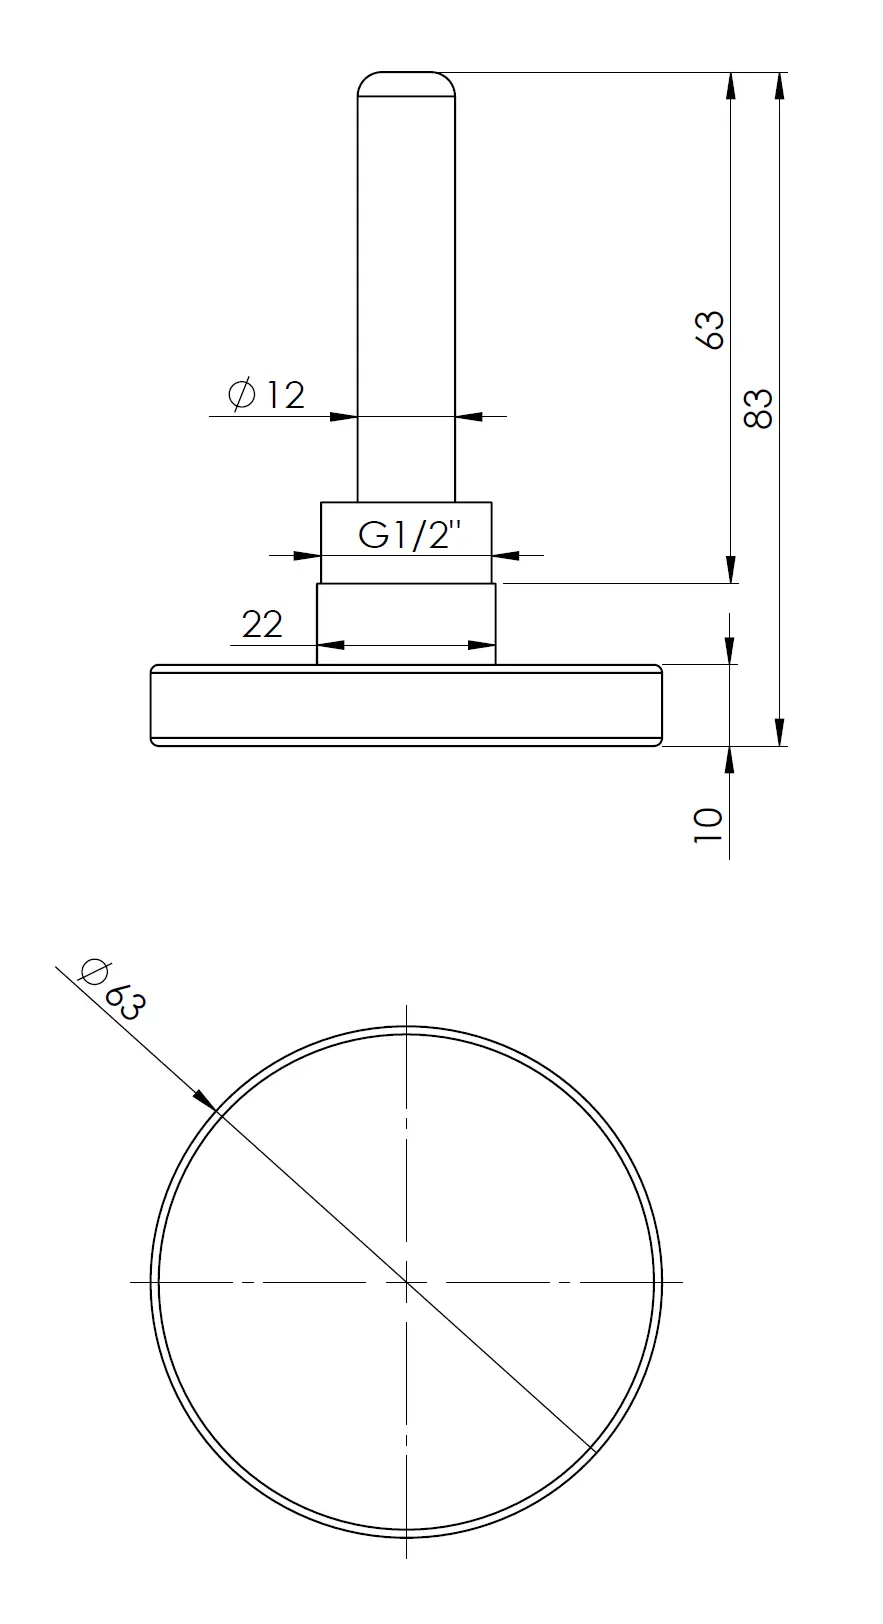 Termometr bimetaliczny BiTh 63, fi63 mm, 0÷160°C, L 63 mm, G1/2", ax, kl. 2 - budowa